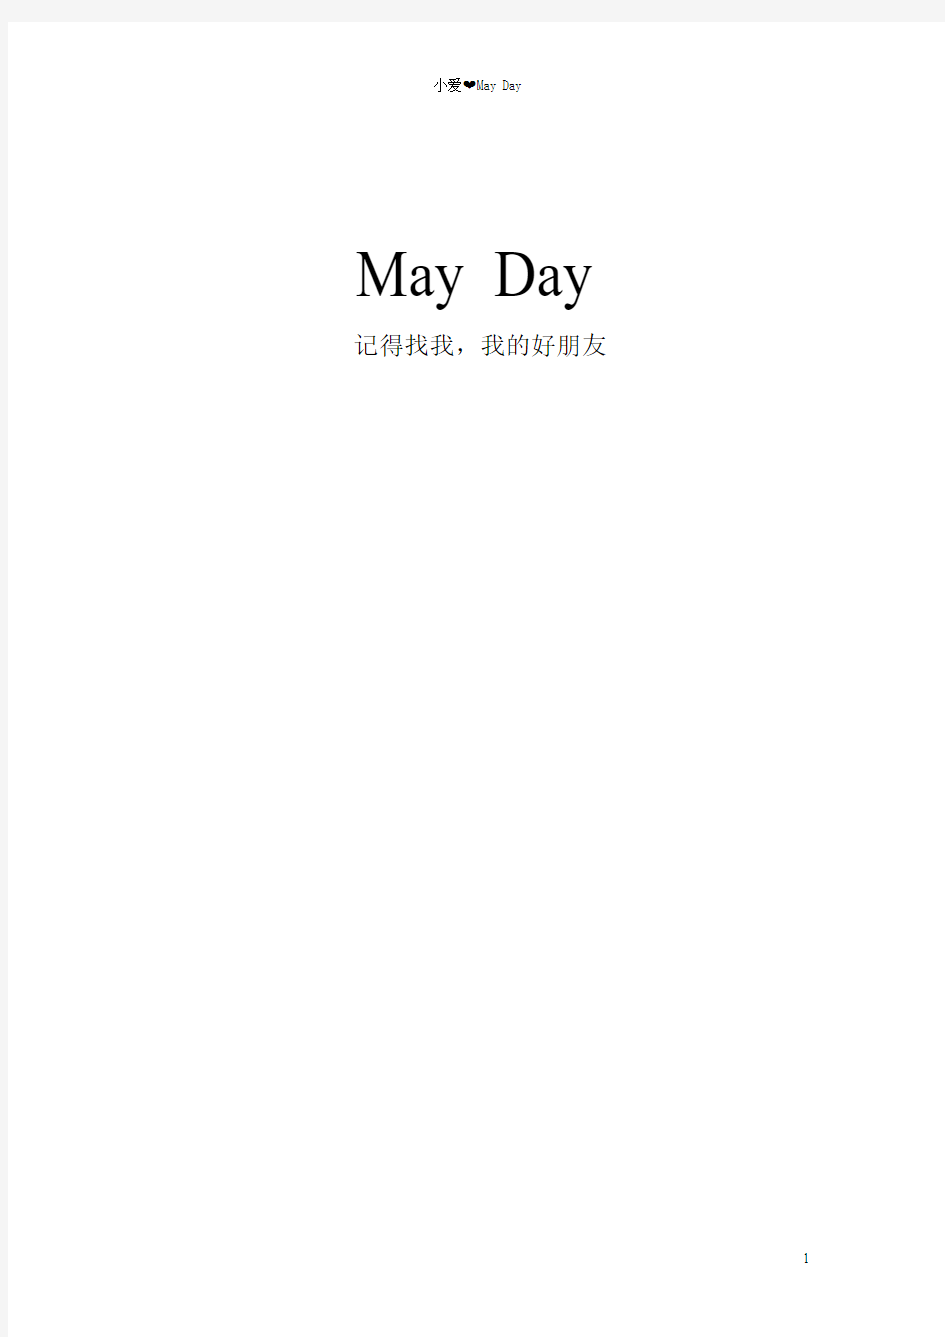 MayDay所有歌曲目录+歌词(截至第二人生,闽南语歌词配拼音注释)(打印版)